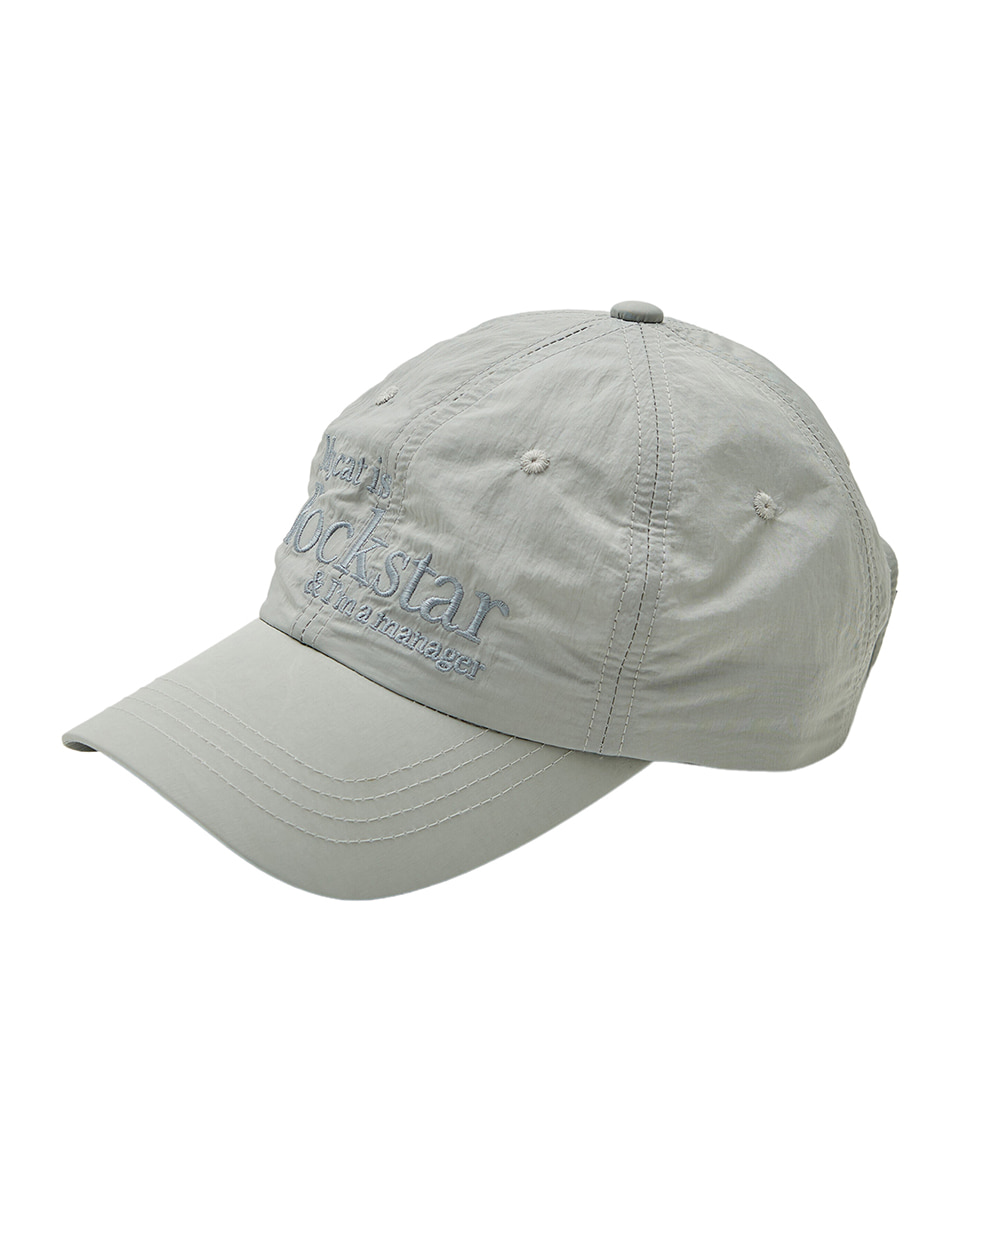 조거쉬 Rockstar cat cap (Light grey)